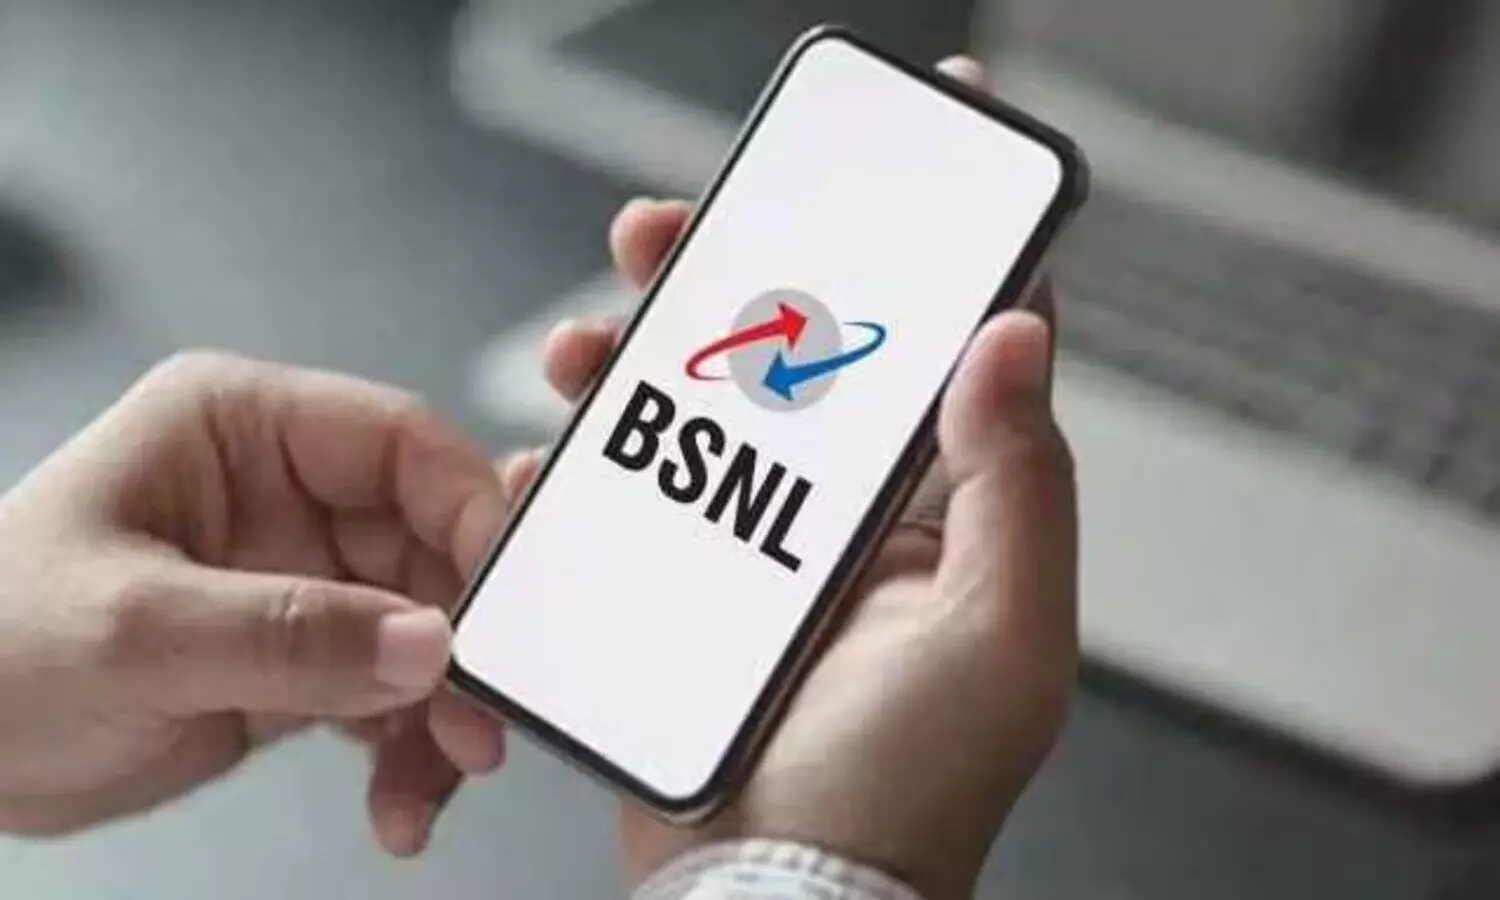 BSNL Diwali offer